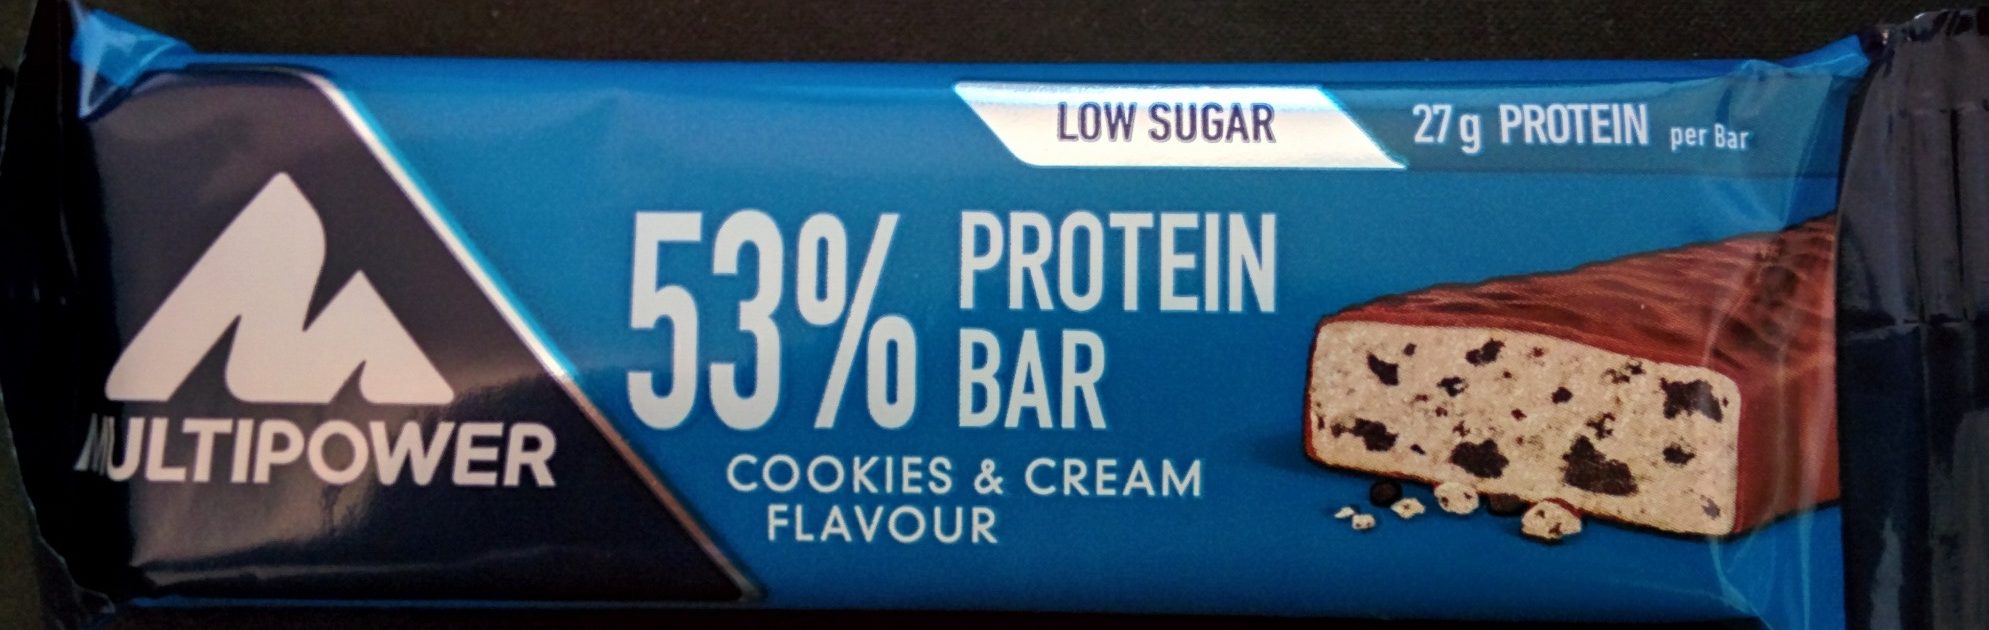 53% Protein Bar Cookies & Cream Flavour - Produit - de